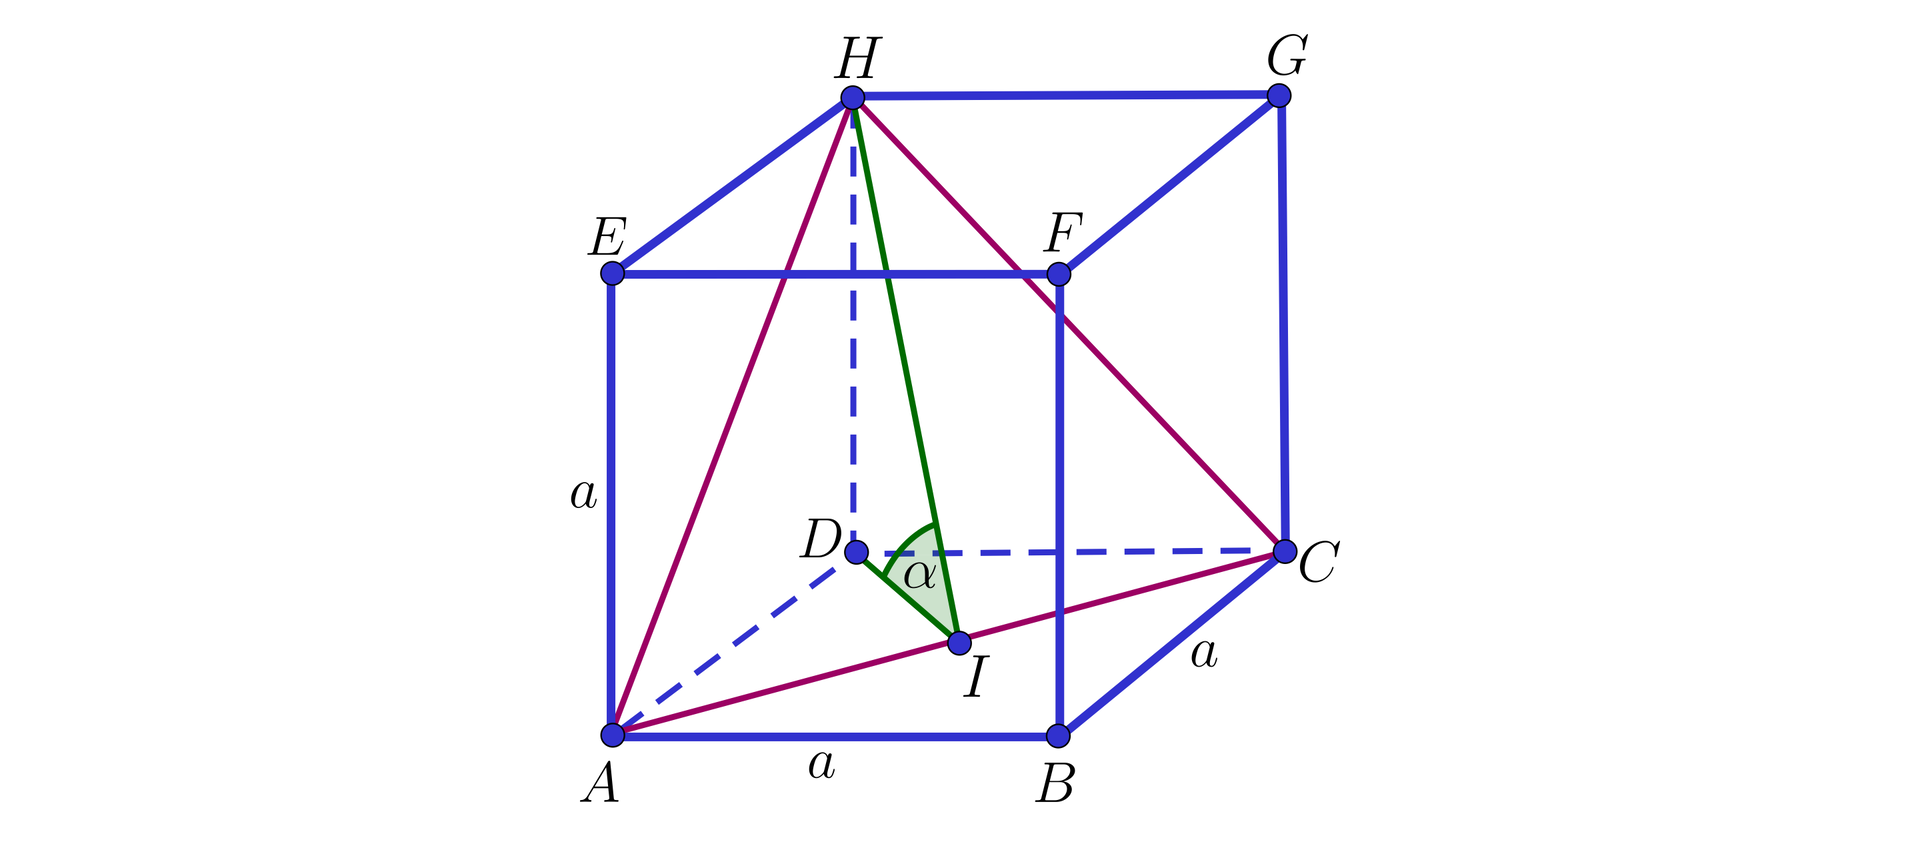 Na ilustracji przedstawiono sześcian o podstawie dolnej ABCD oraz górnej EFGH. Zaznaczono trójkąt ACH, którego boki stanowią przekątne dwóch ścian bocznych i podstawy. Z wierzchołka H opuszczono wysokość powstałego trójkąta, którego spodek leży w punkcie I. Punkt I połączono z wierzchołkiem D. ∠DIH oznaczono alfa.